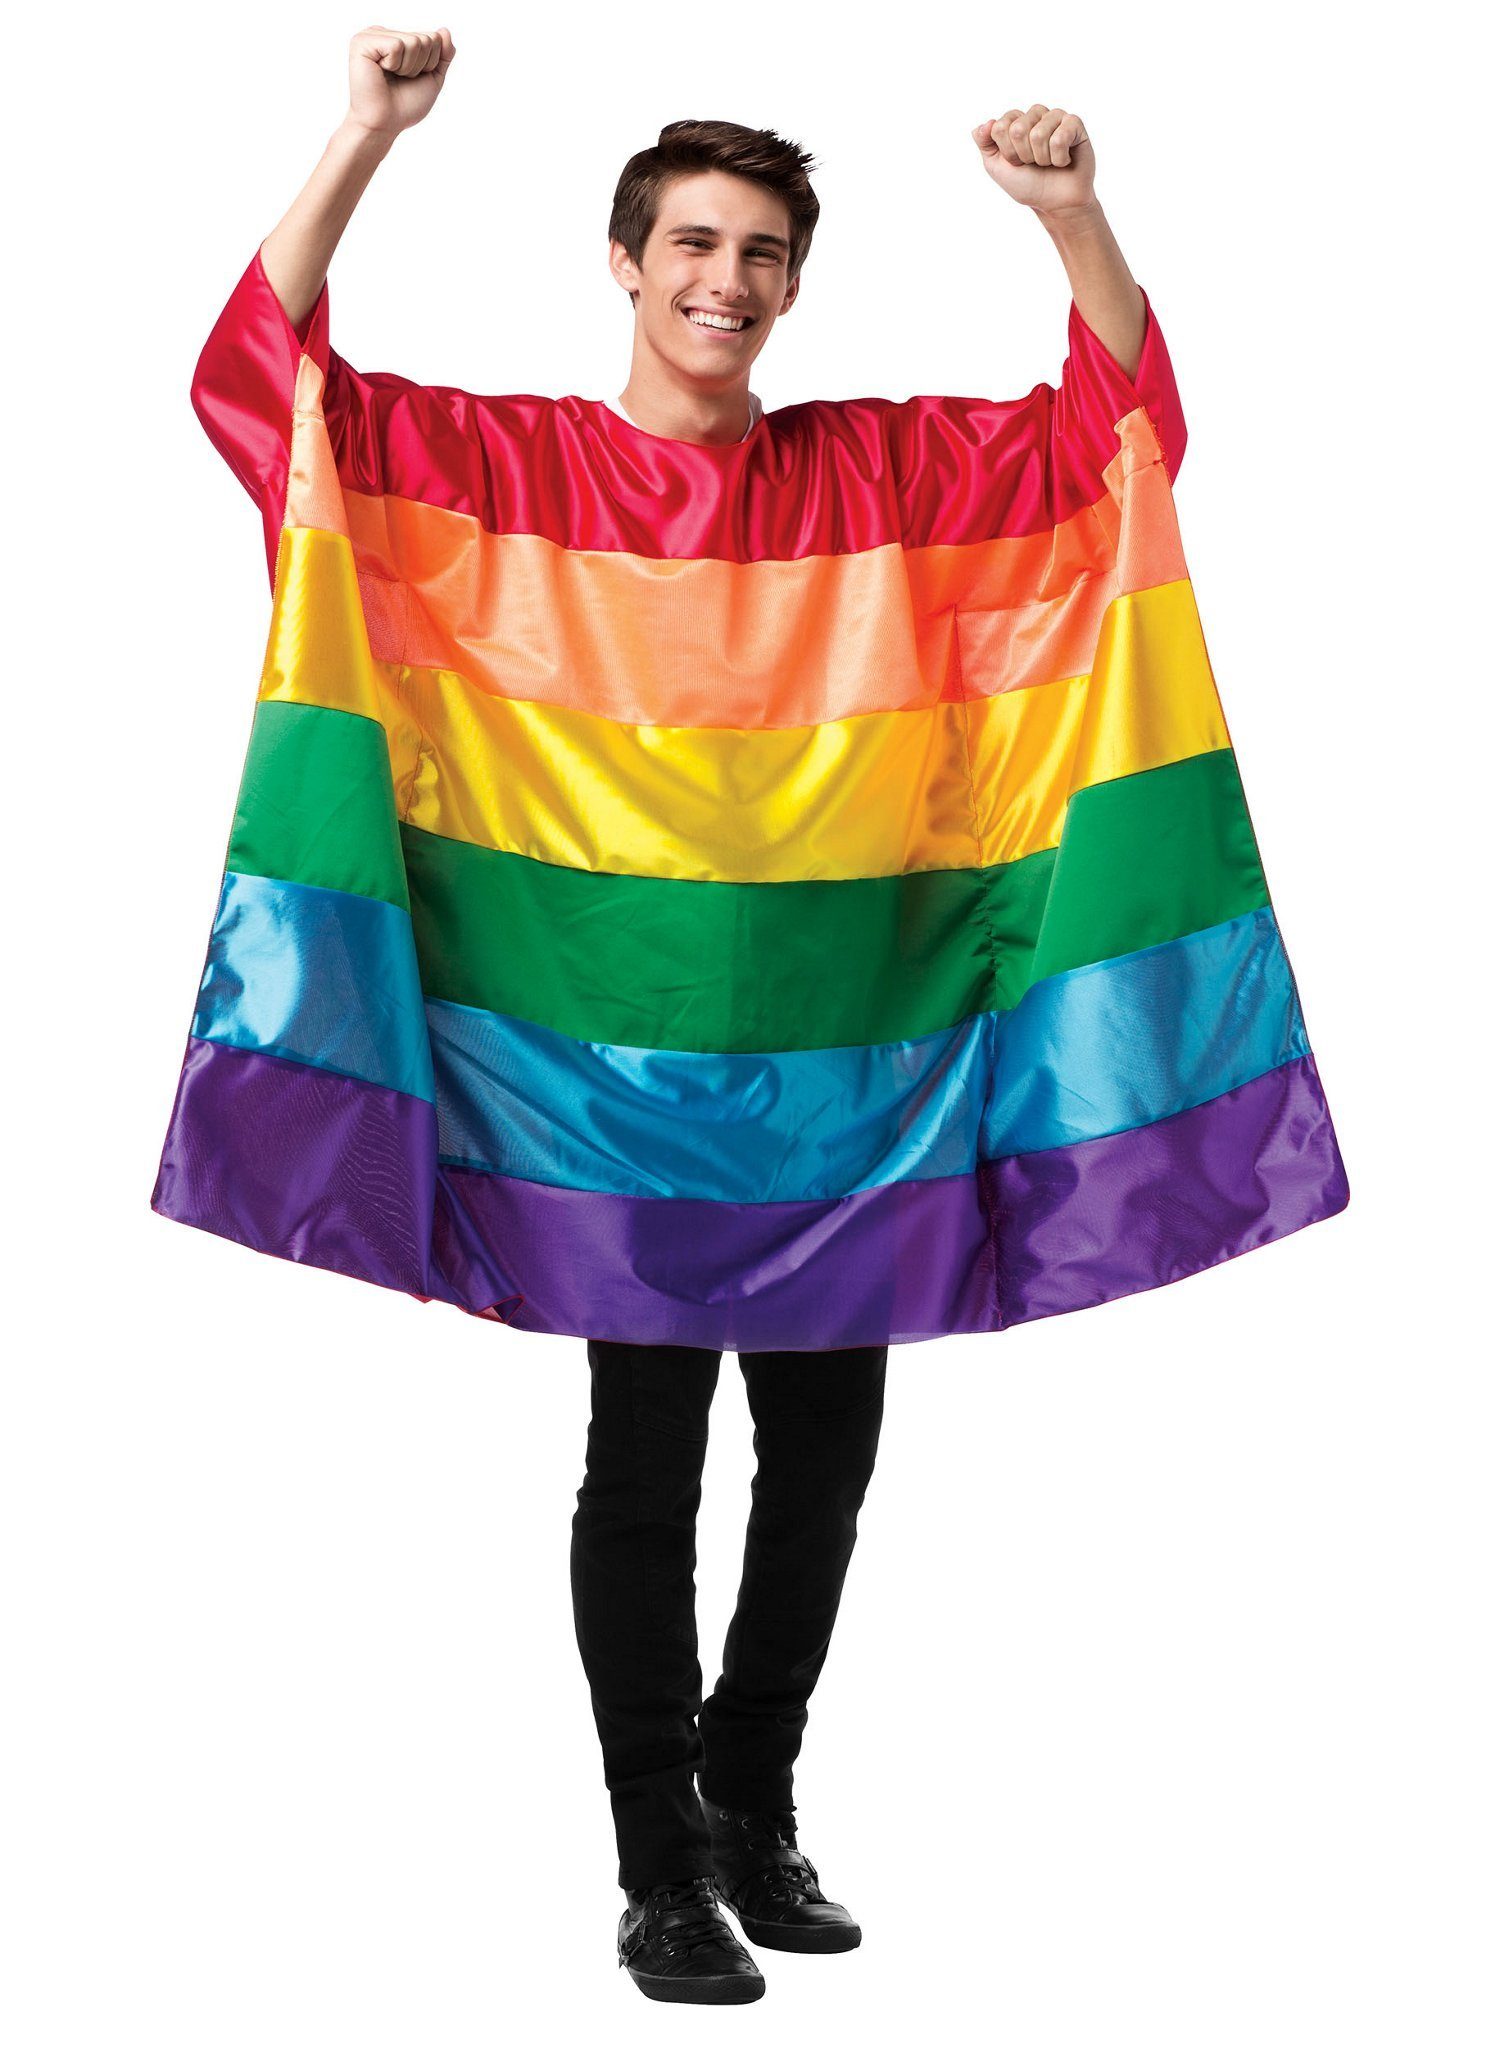 Rast Imposta Kostüm Regenbogenfahne, Auffälliges Flaggenkostüm für farbenfrohe Auftritte